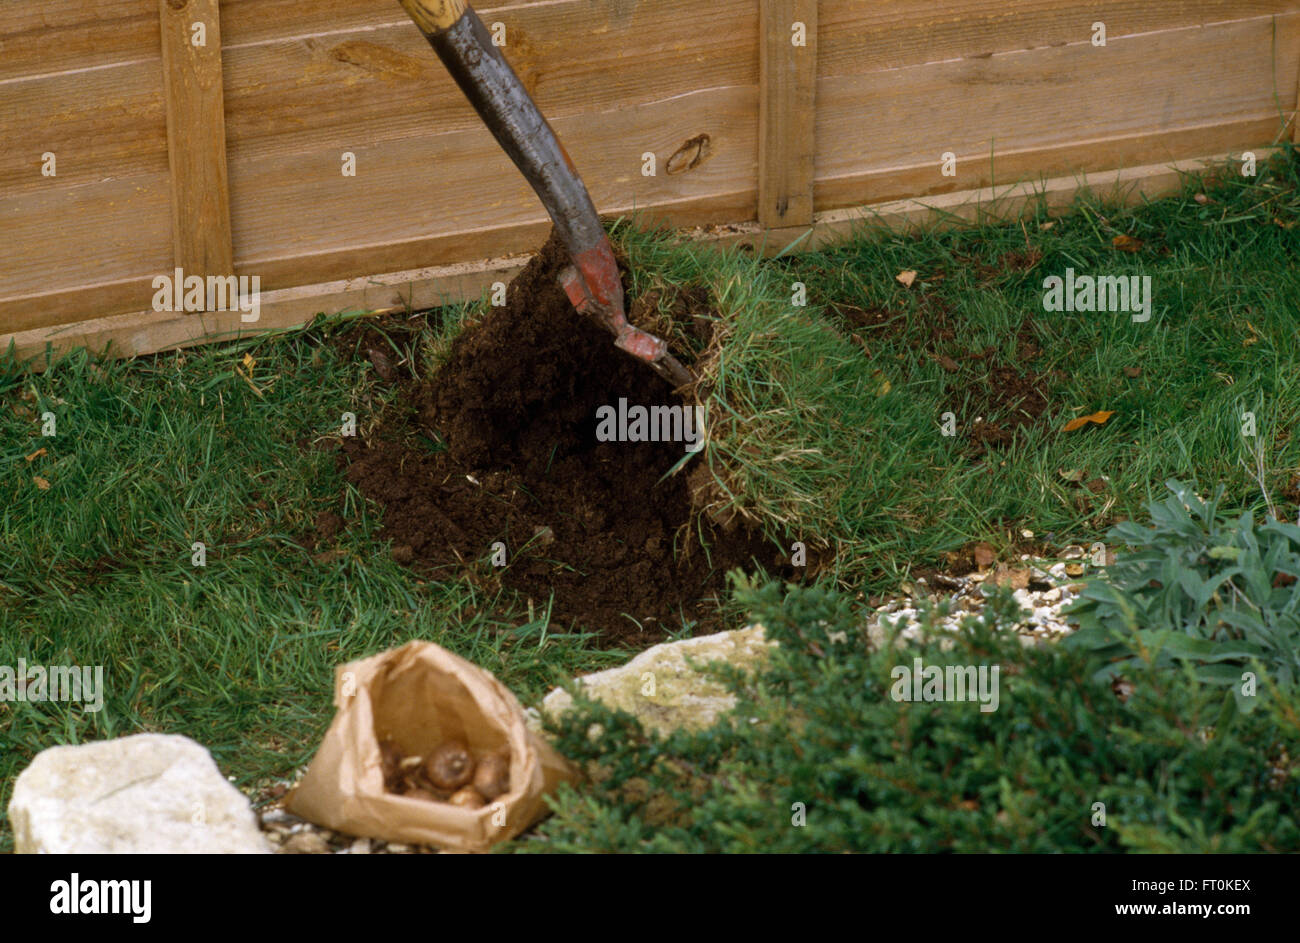 Nahaufnahme eines Spatens gräbt Rasen vor dem Einpflanzen von Blumenzwiebeln im Rasen Stockfoto